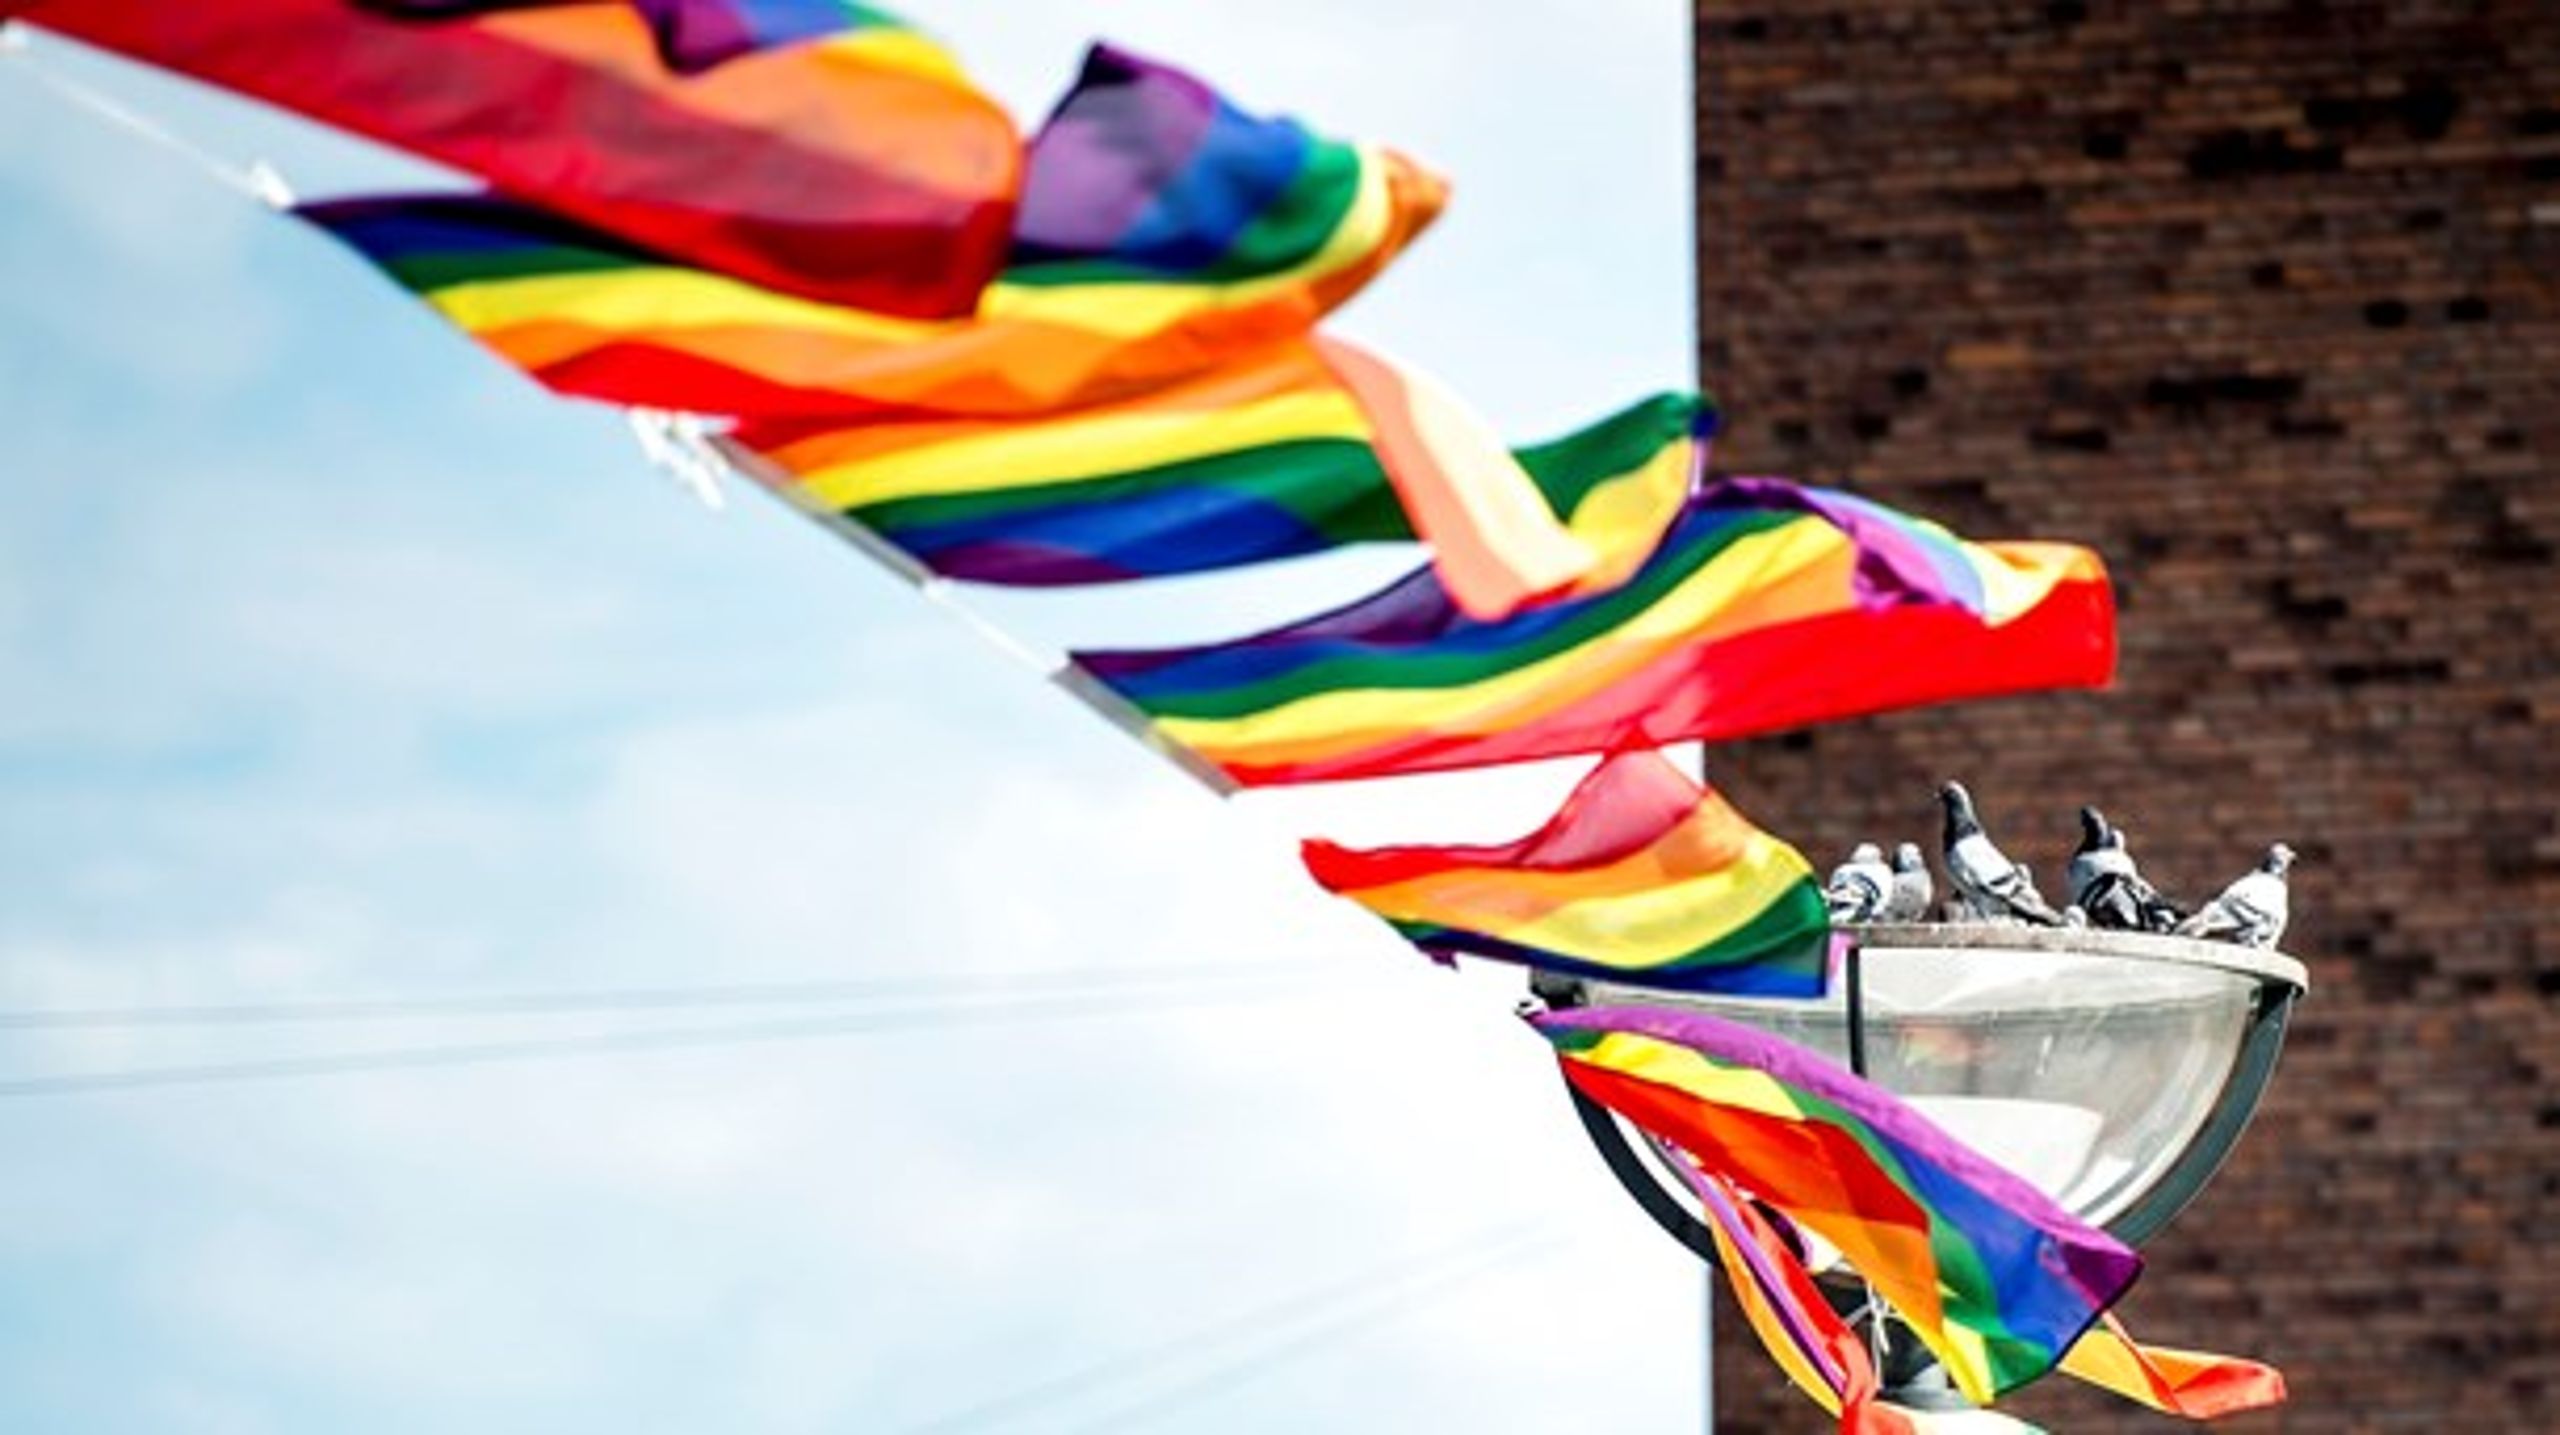 Virksomheder skal engagere sig i at fremme en mangfoldig og inkluderende kultur hele året og ikke kun under den årlige <i>pride parade</i>, skriver&nbsp;Jesper Mørk.